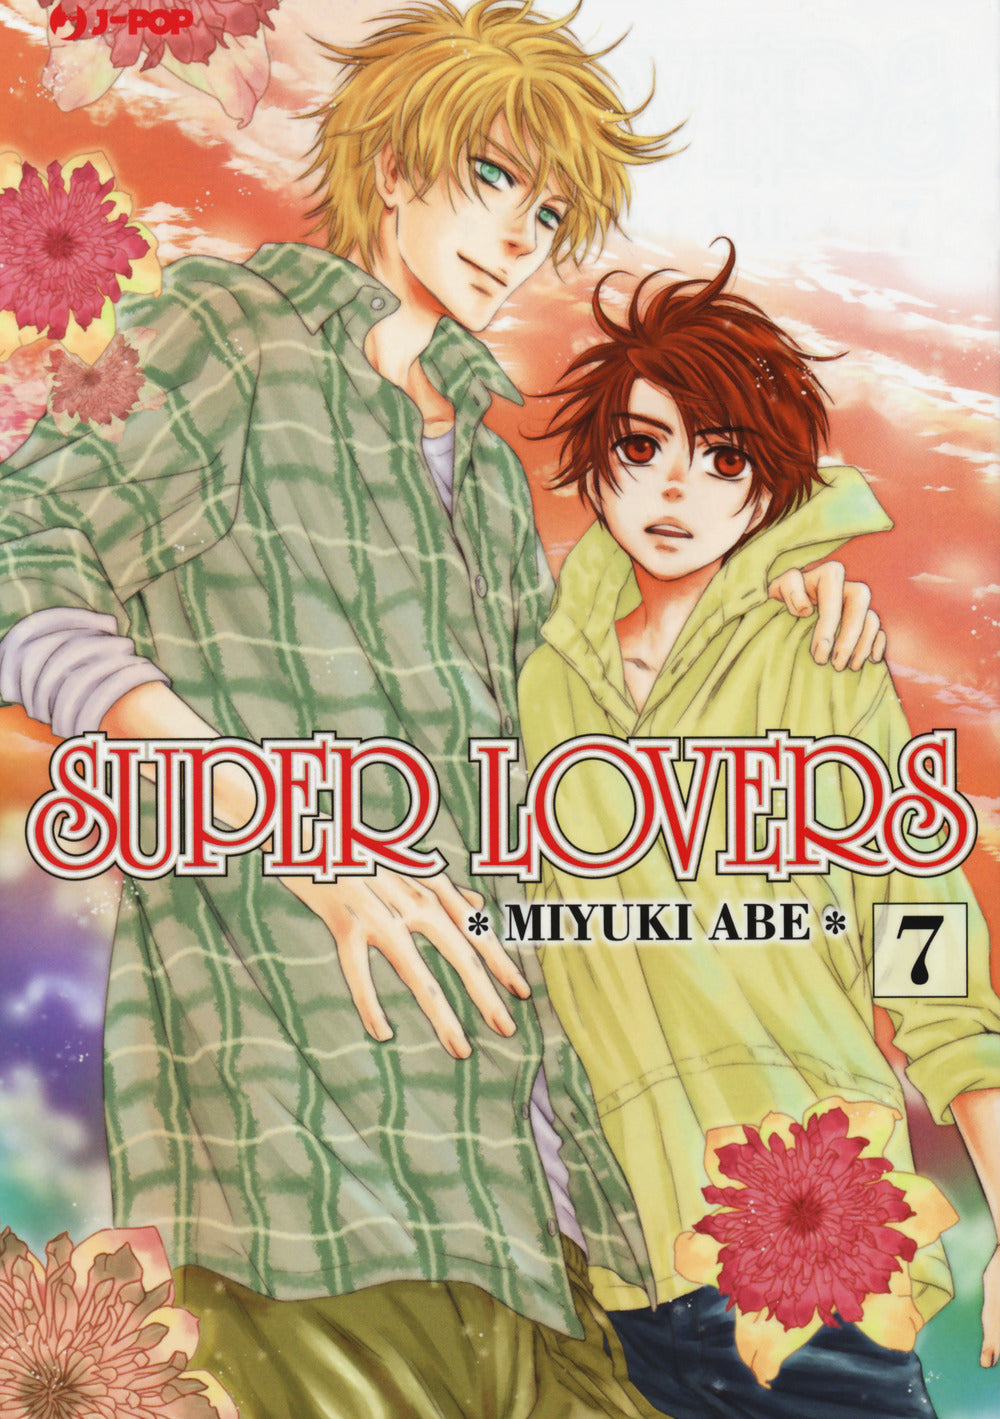 Super lovers. Vol. 7.